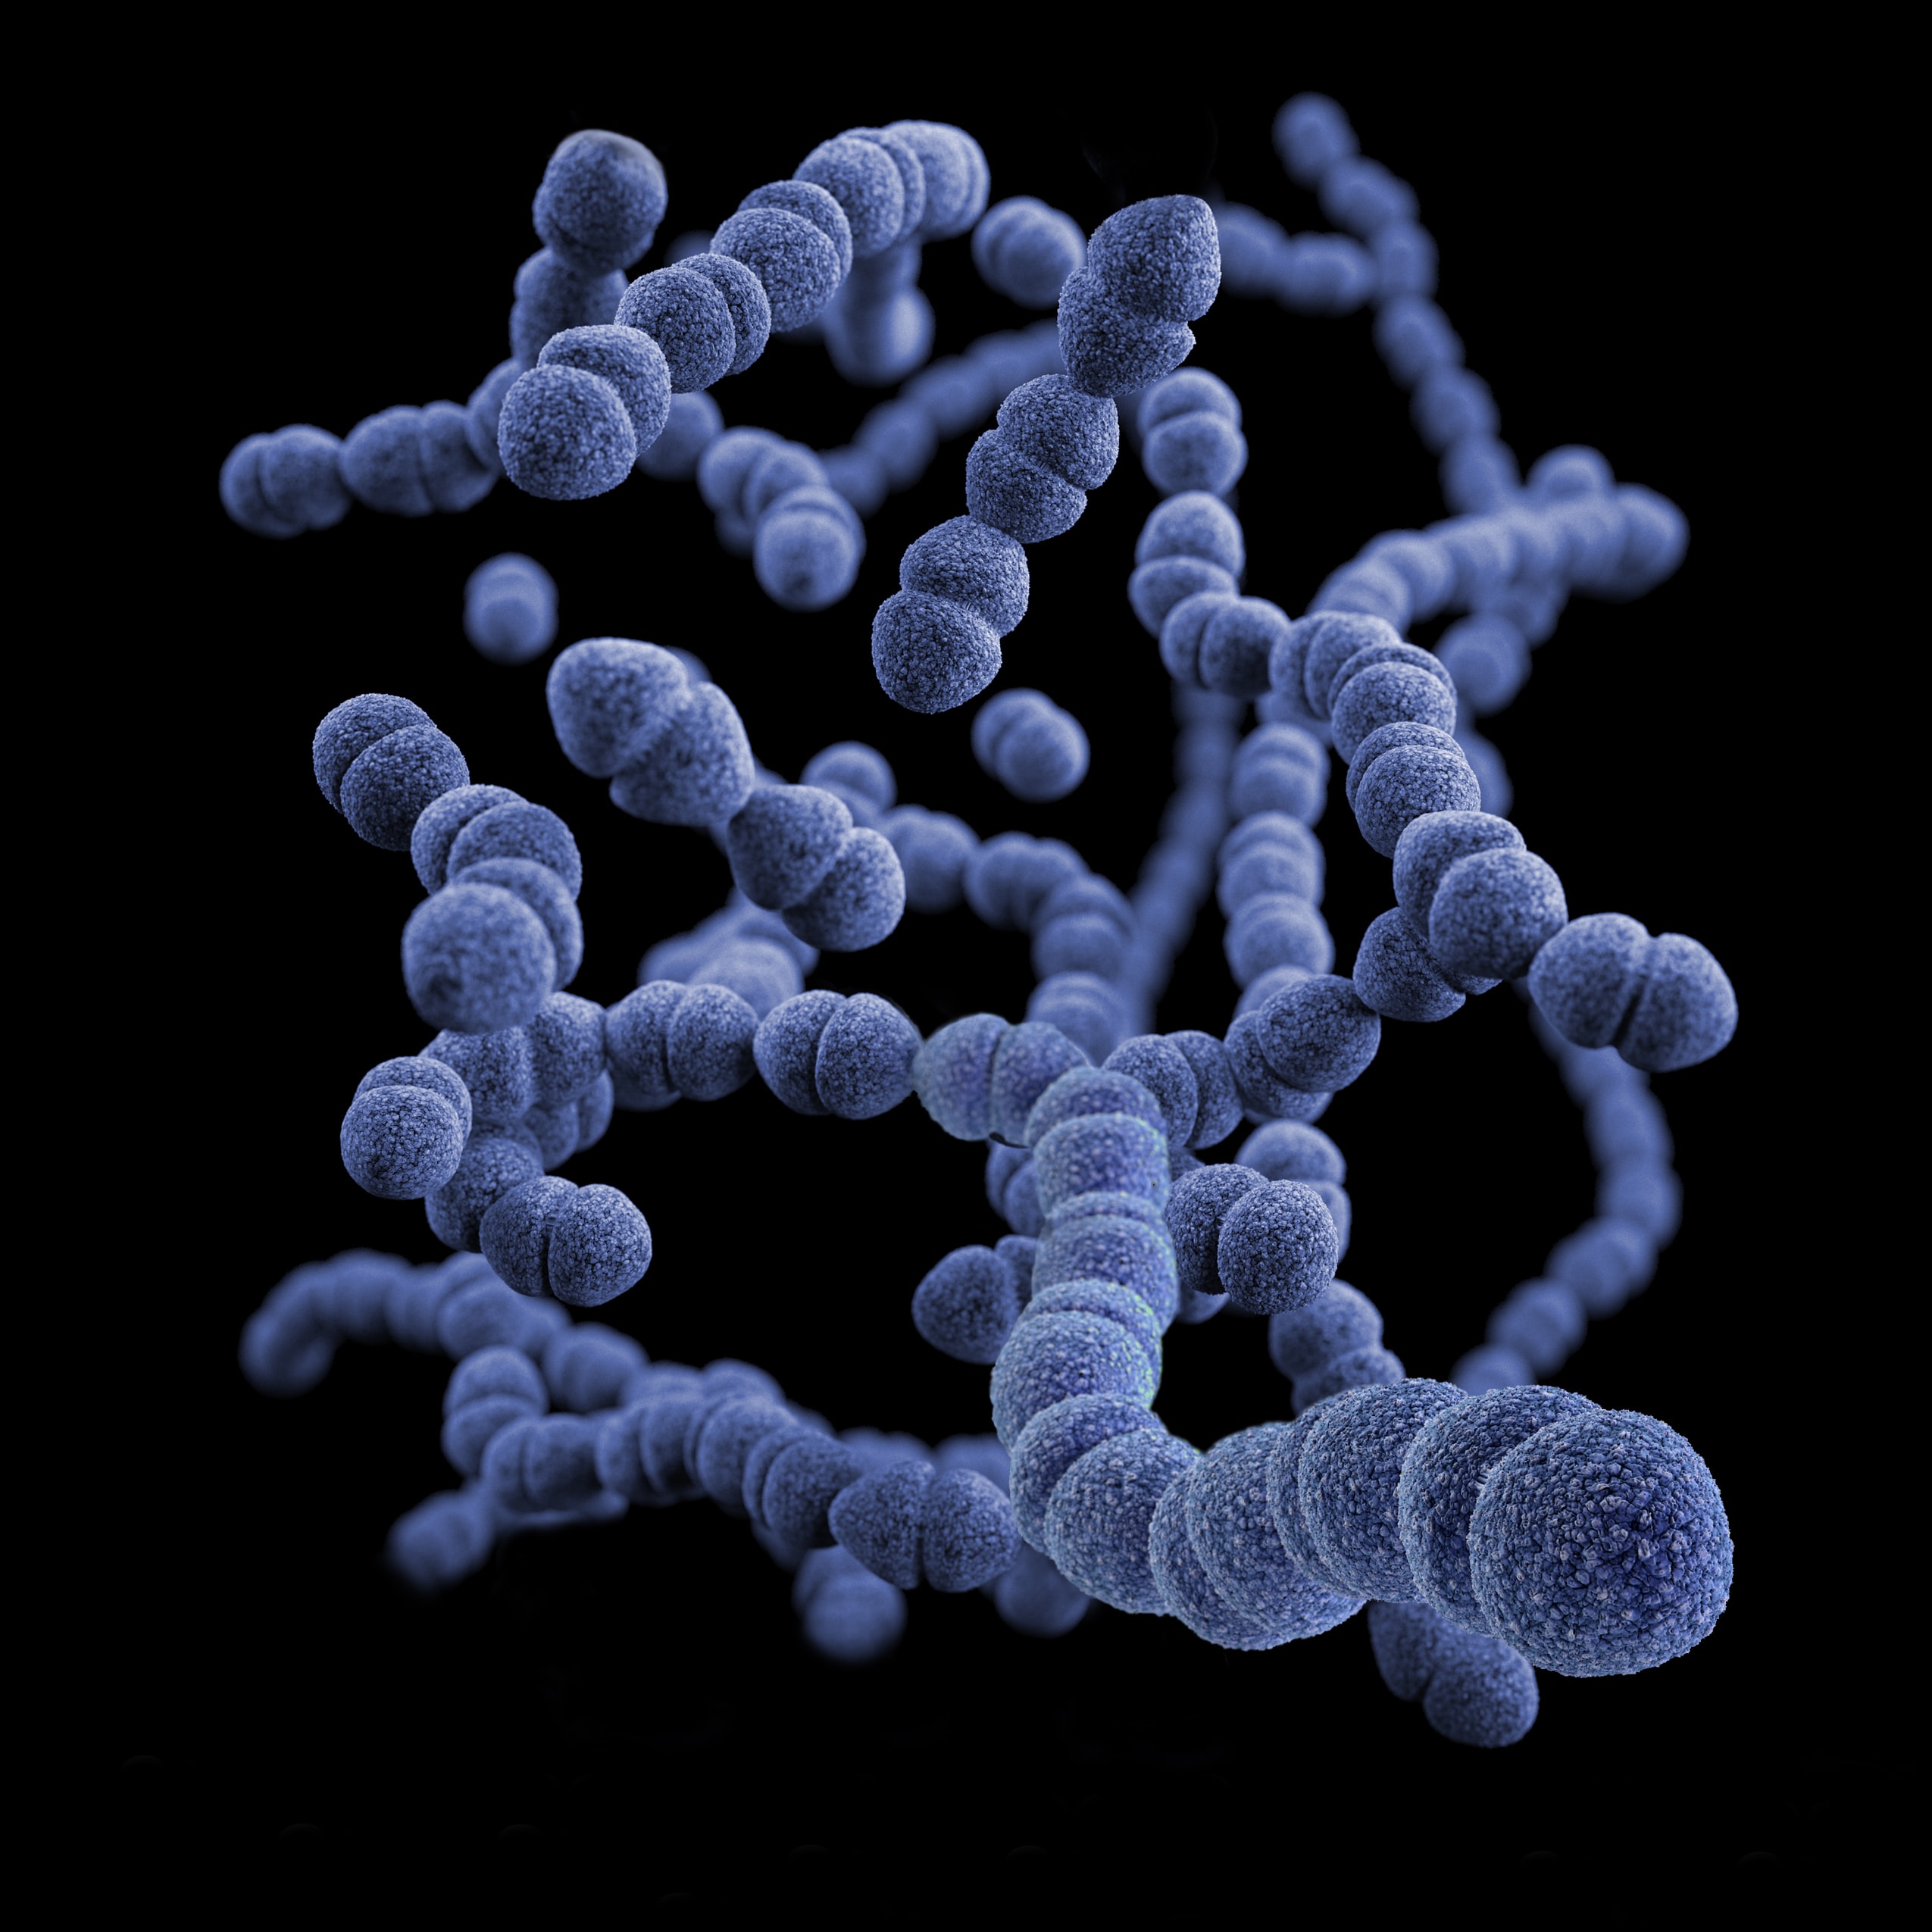 Bacteria (Streptococcus pneumoniae)